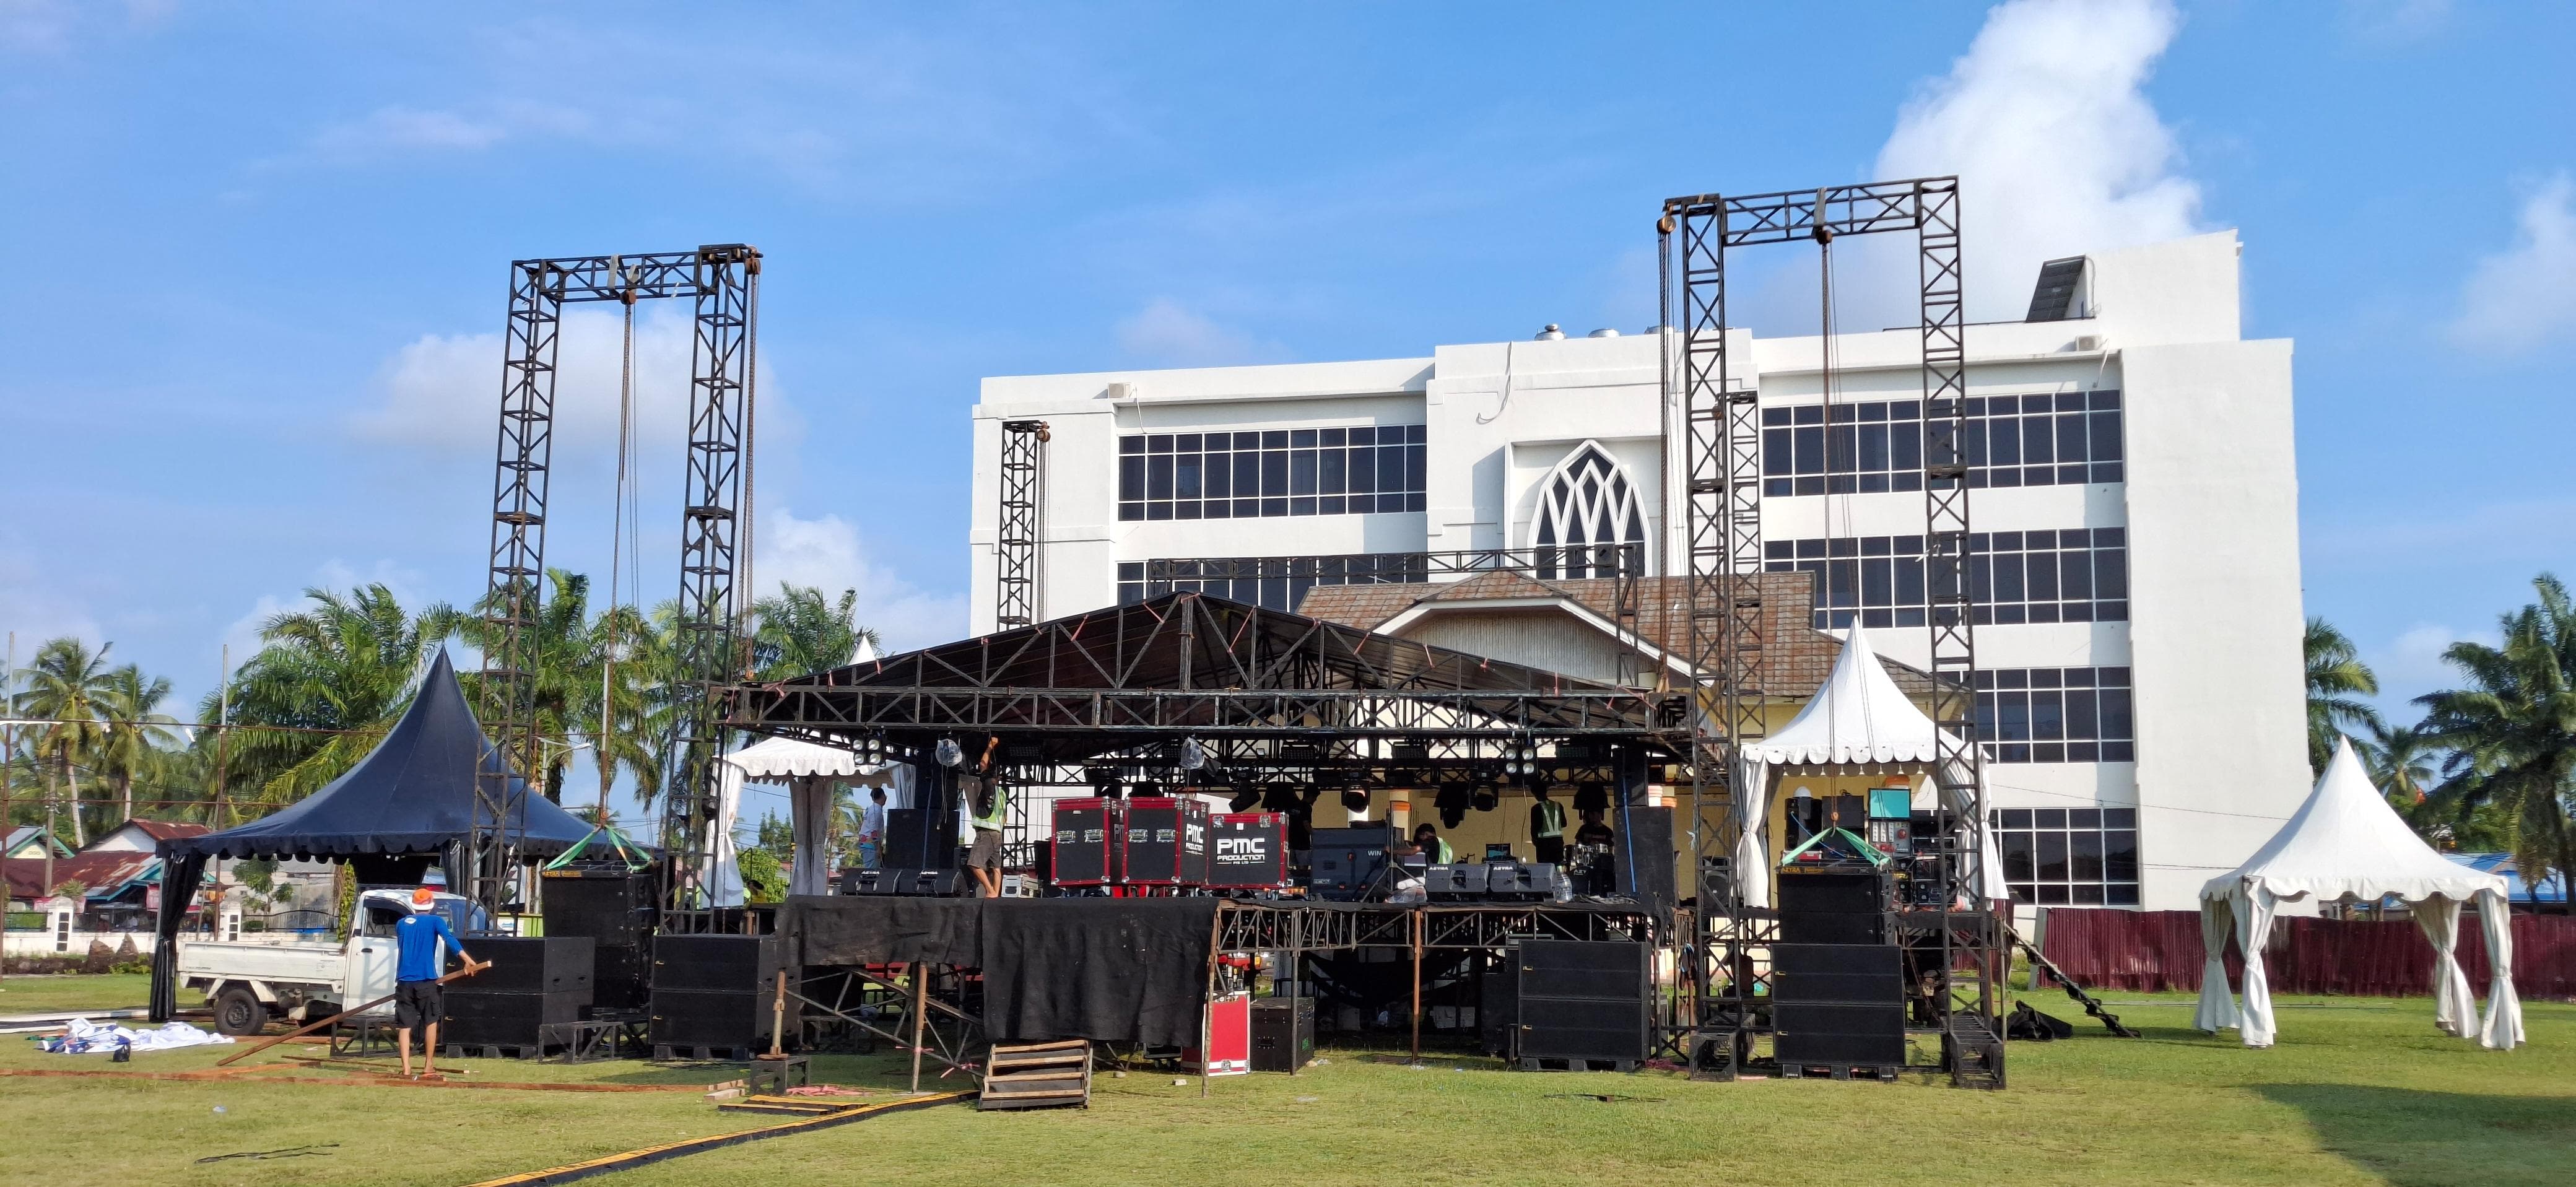 Konser ADA Band di Peluncuran Maskot Pilkada KPU Bengkulu Selatan, Dishub BS Gratiskan Retribusi Parkir 